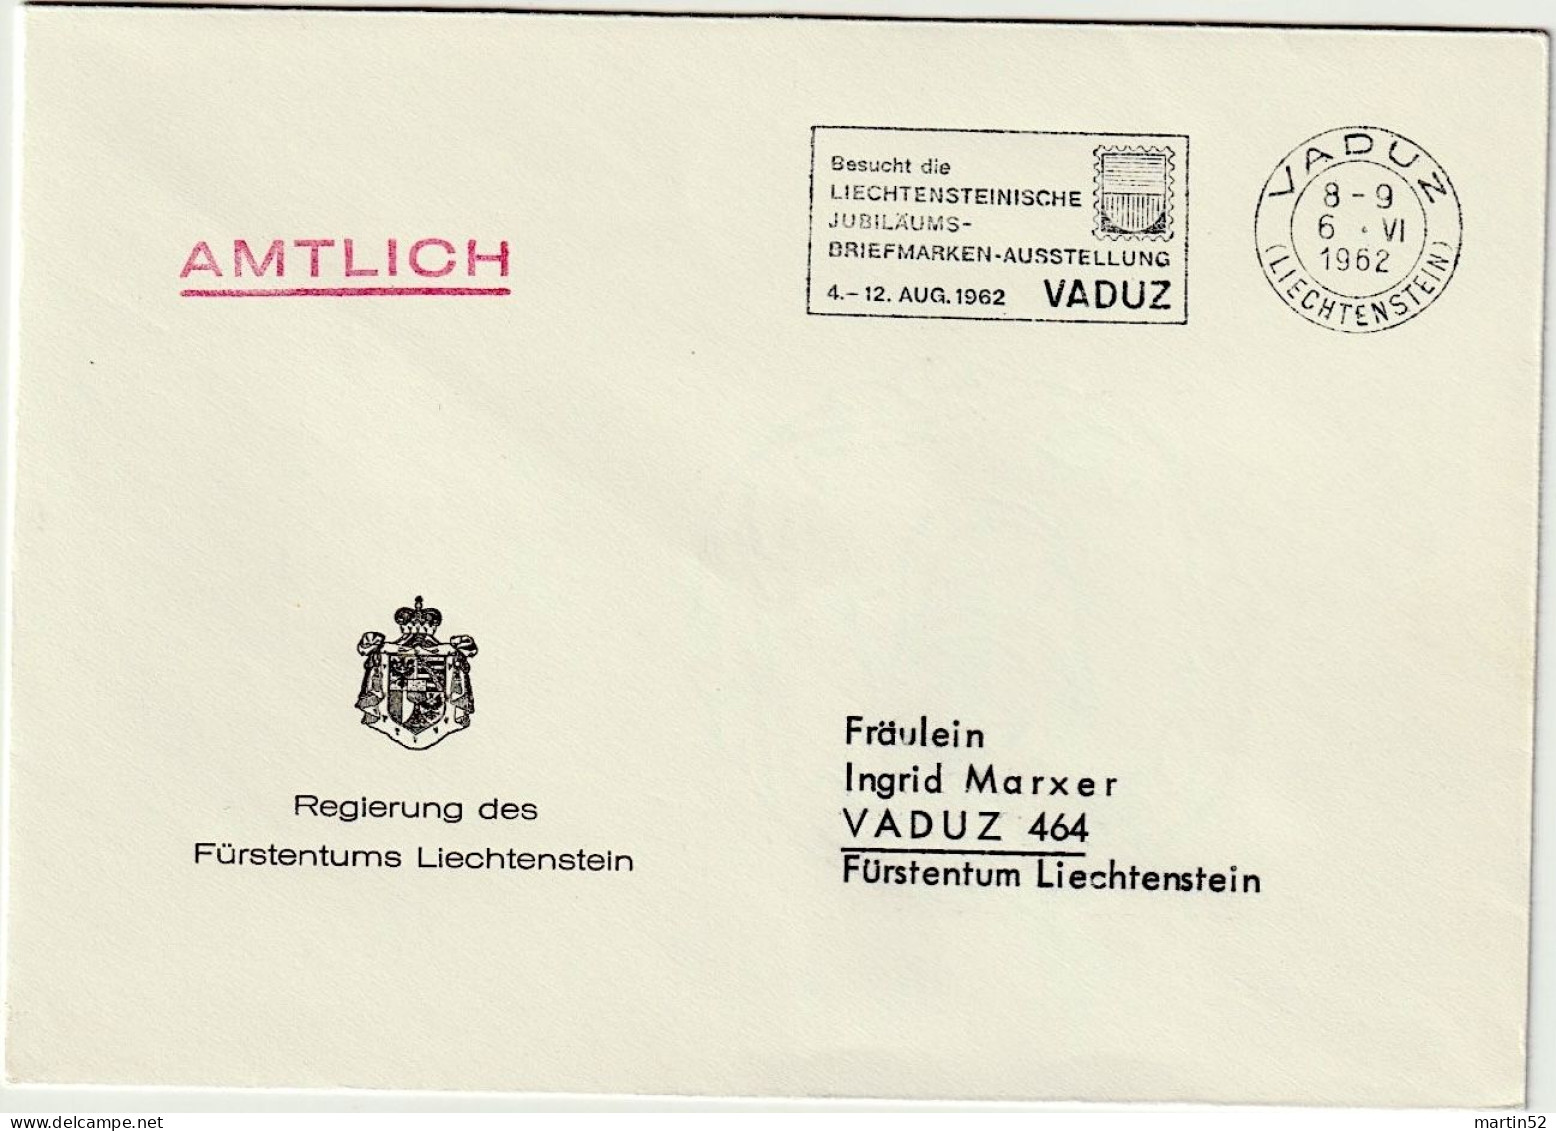 Liechtenstein 1962: Regierung Des F.L. AMTLICH Mit ⊙ VADUZ 6.VI.1962 Besucht Die Jubiläums-Briefmarken-Ausstellung - Dienstzegels